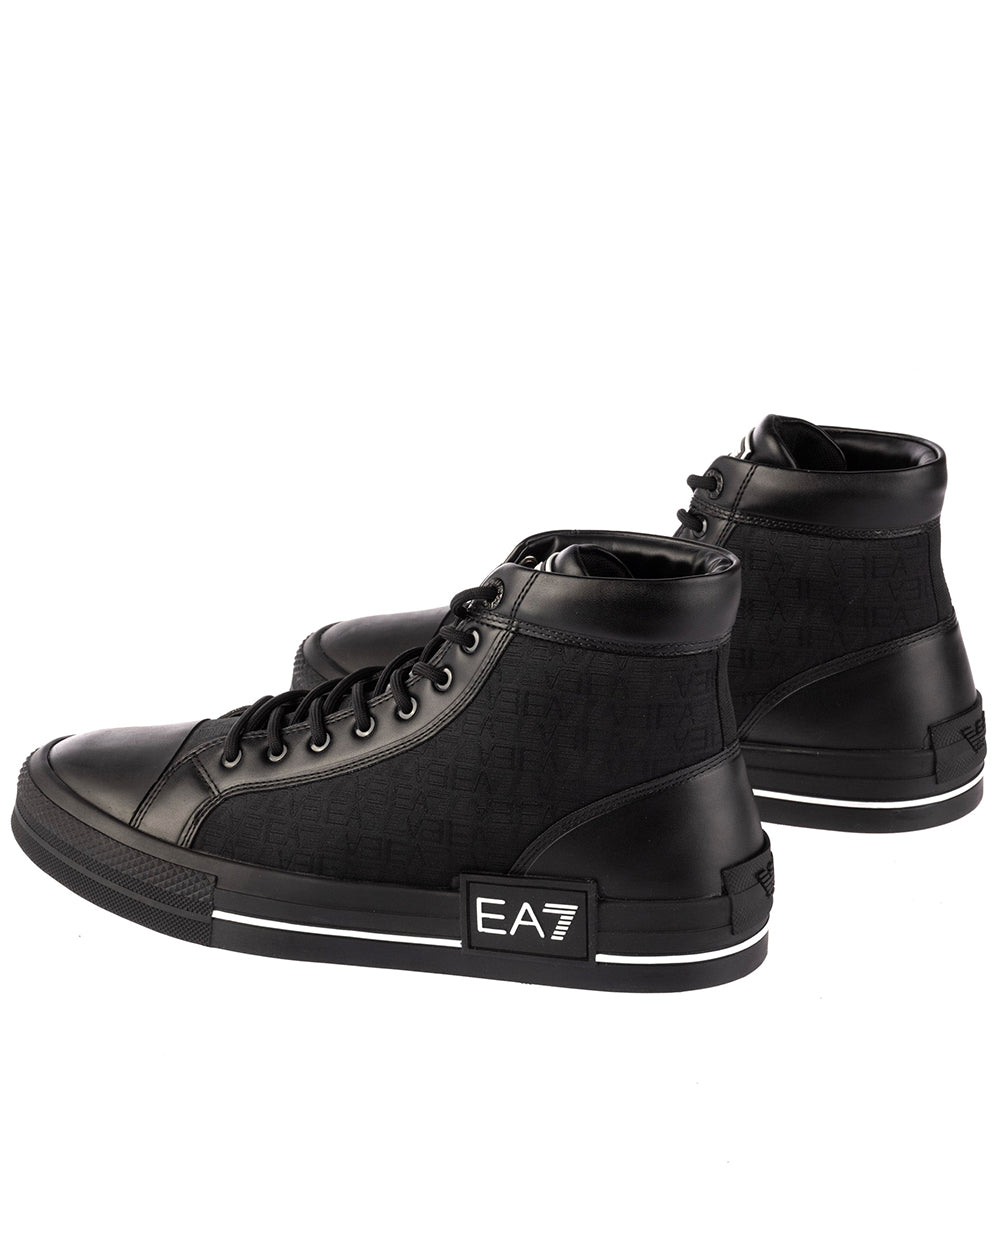 Sneakers Emporio Armani EA7 Bianche Poliestere - mem39